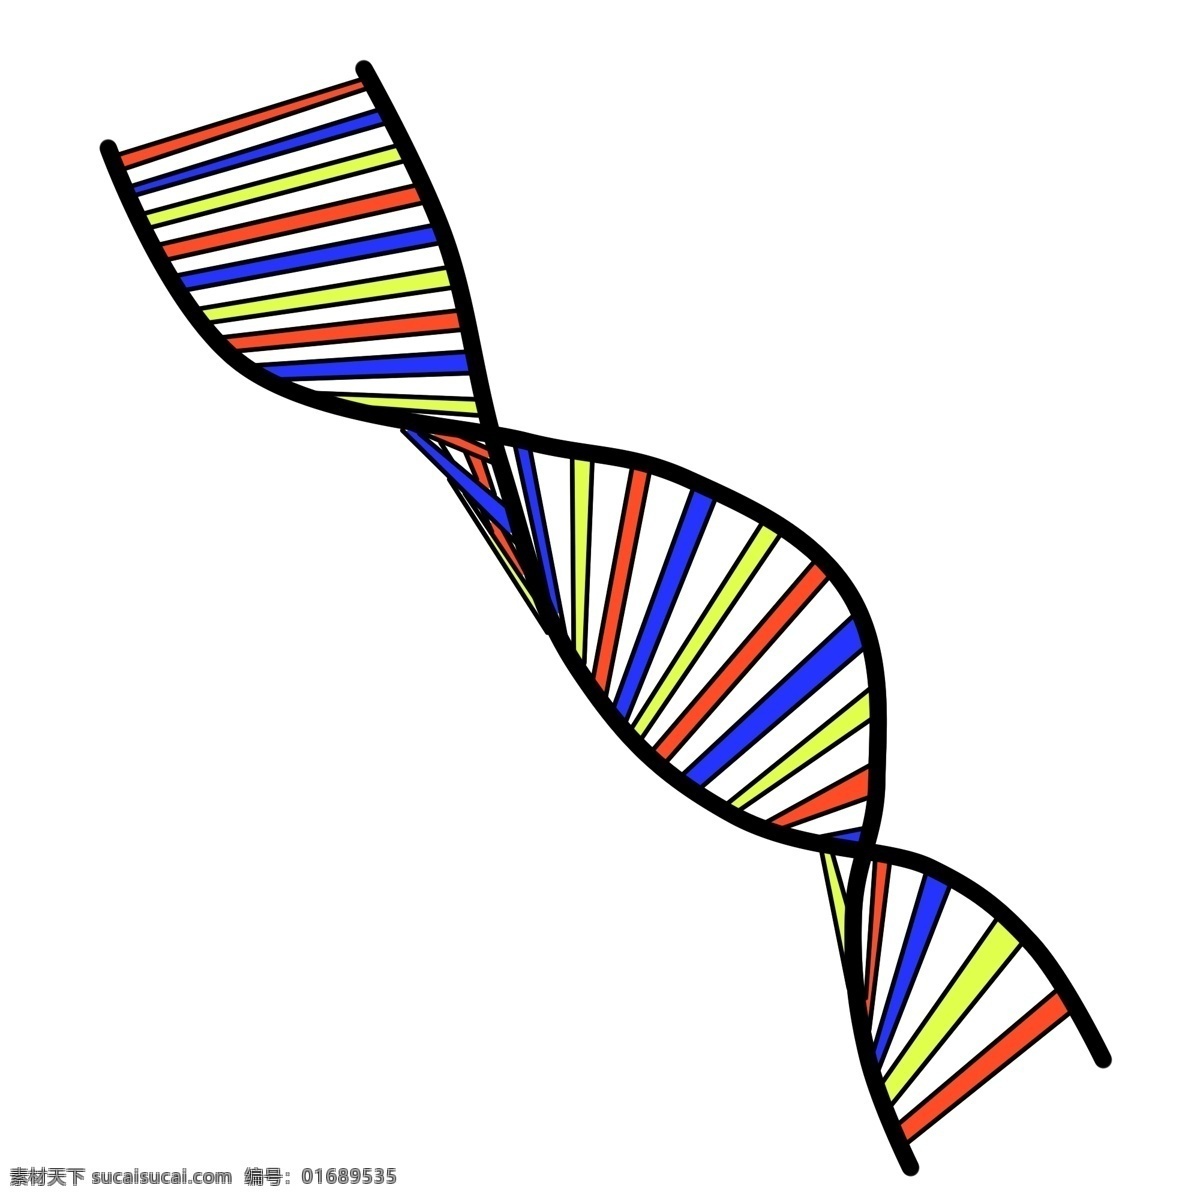 彩色 dna 遗传 螺旋 图 生物学 转基因 医学 基因 螺旋图插画